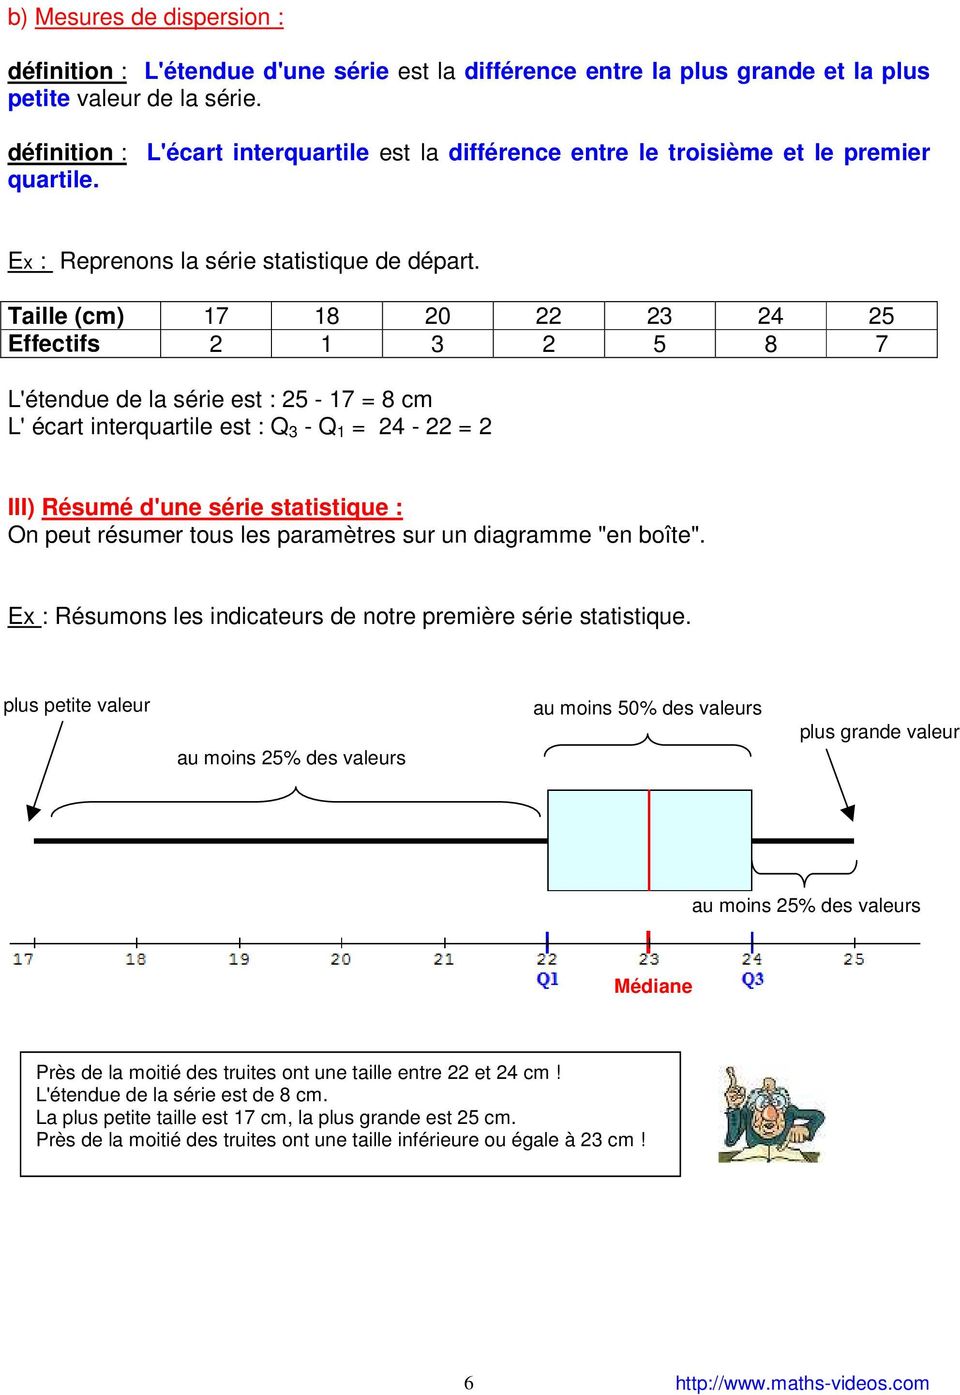 Effectifs 2 1 3 2 5 8 7 L'étendue de la série est : 25-17 = 8 cm L' écart interquartile est : Q 3 - Q 1 = 2-22 = 2 III) Résumé d'une série statistique : On peut résumer tous les paramètres sur un